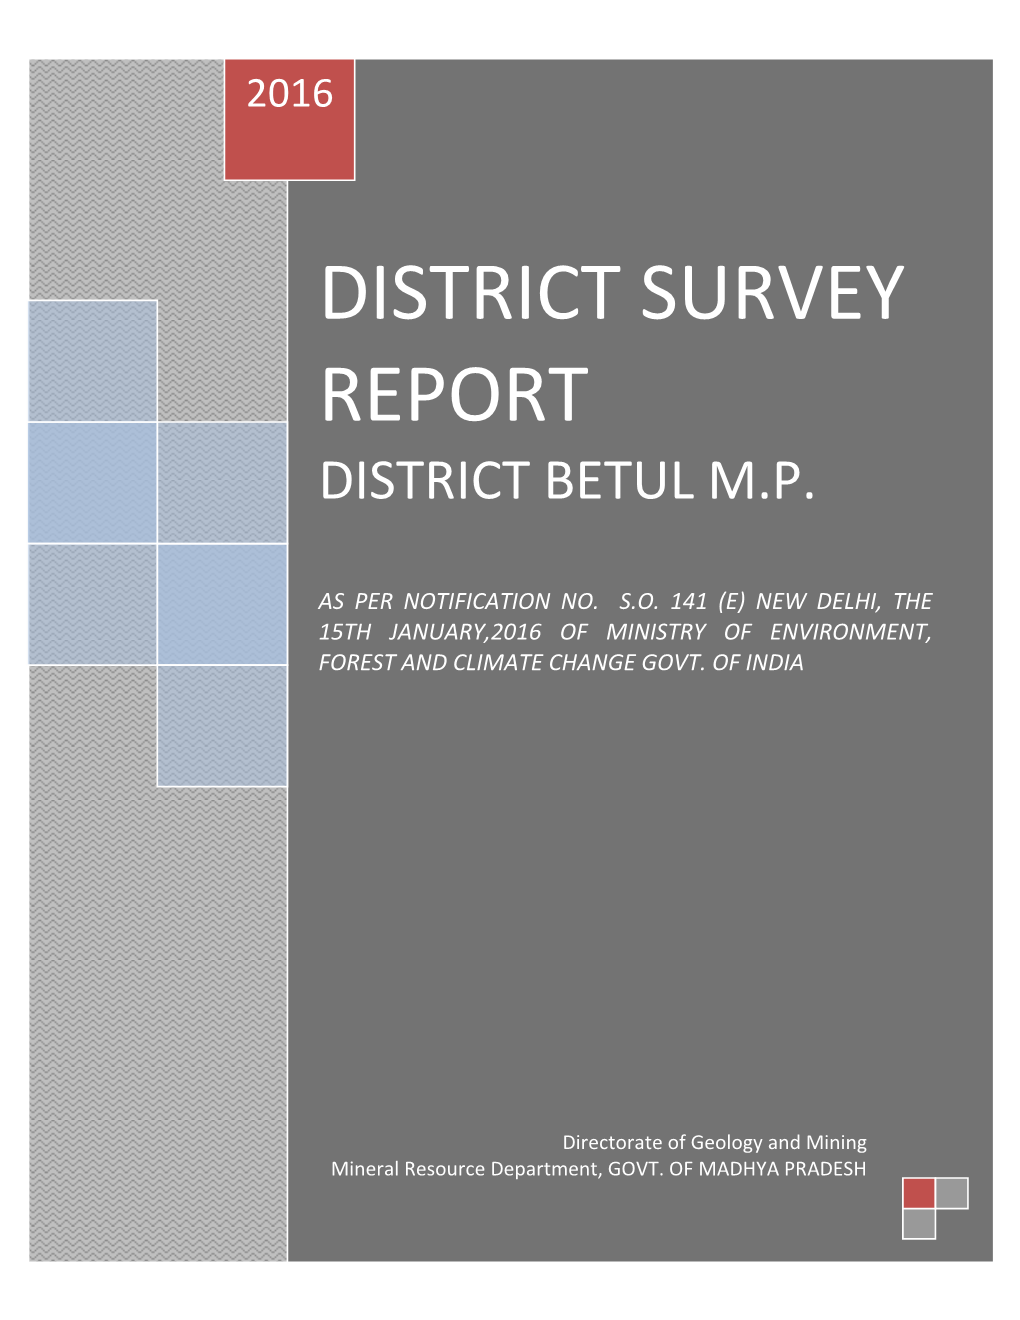 District Survey Report